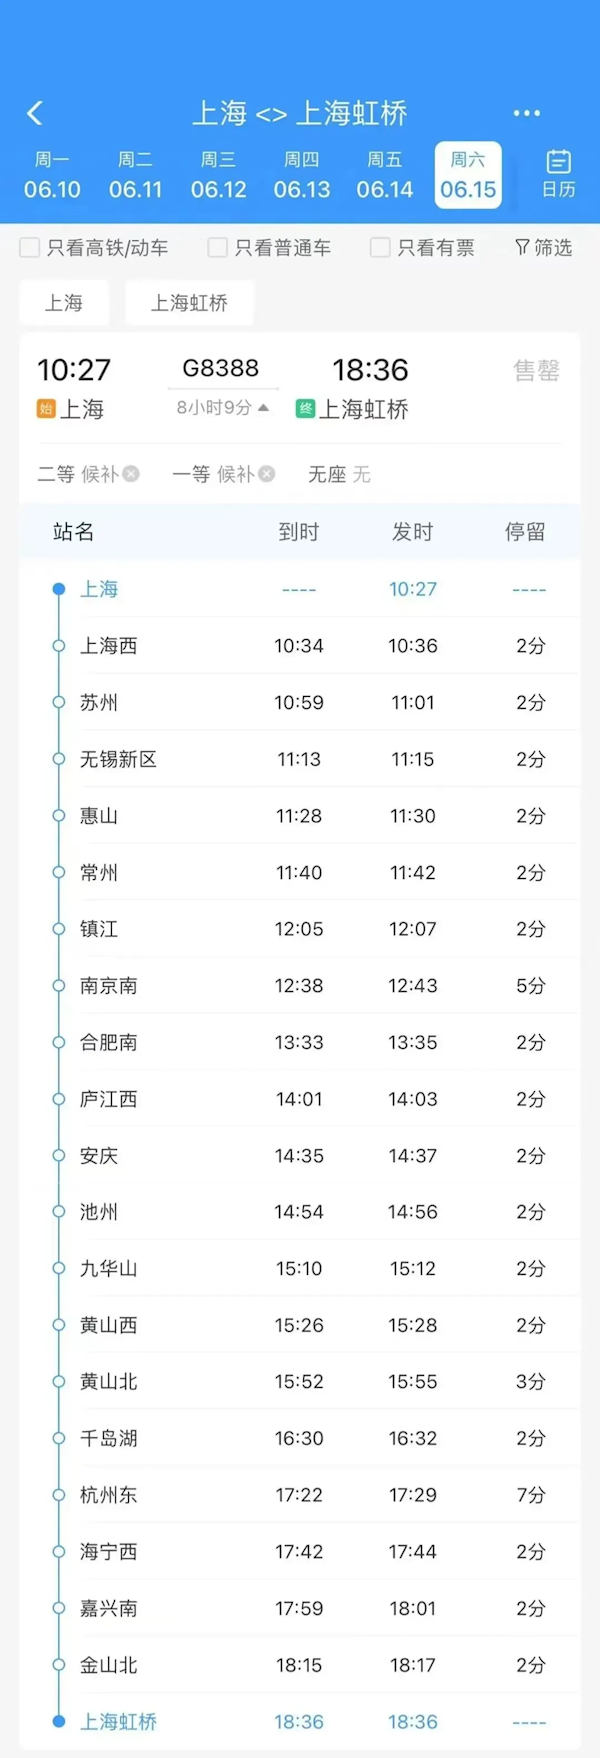 上海-上海 全程8小时！长三角超级环线高铁今日正式开通